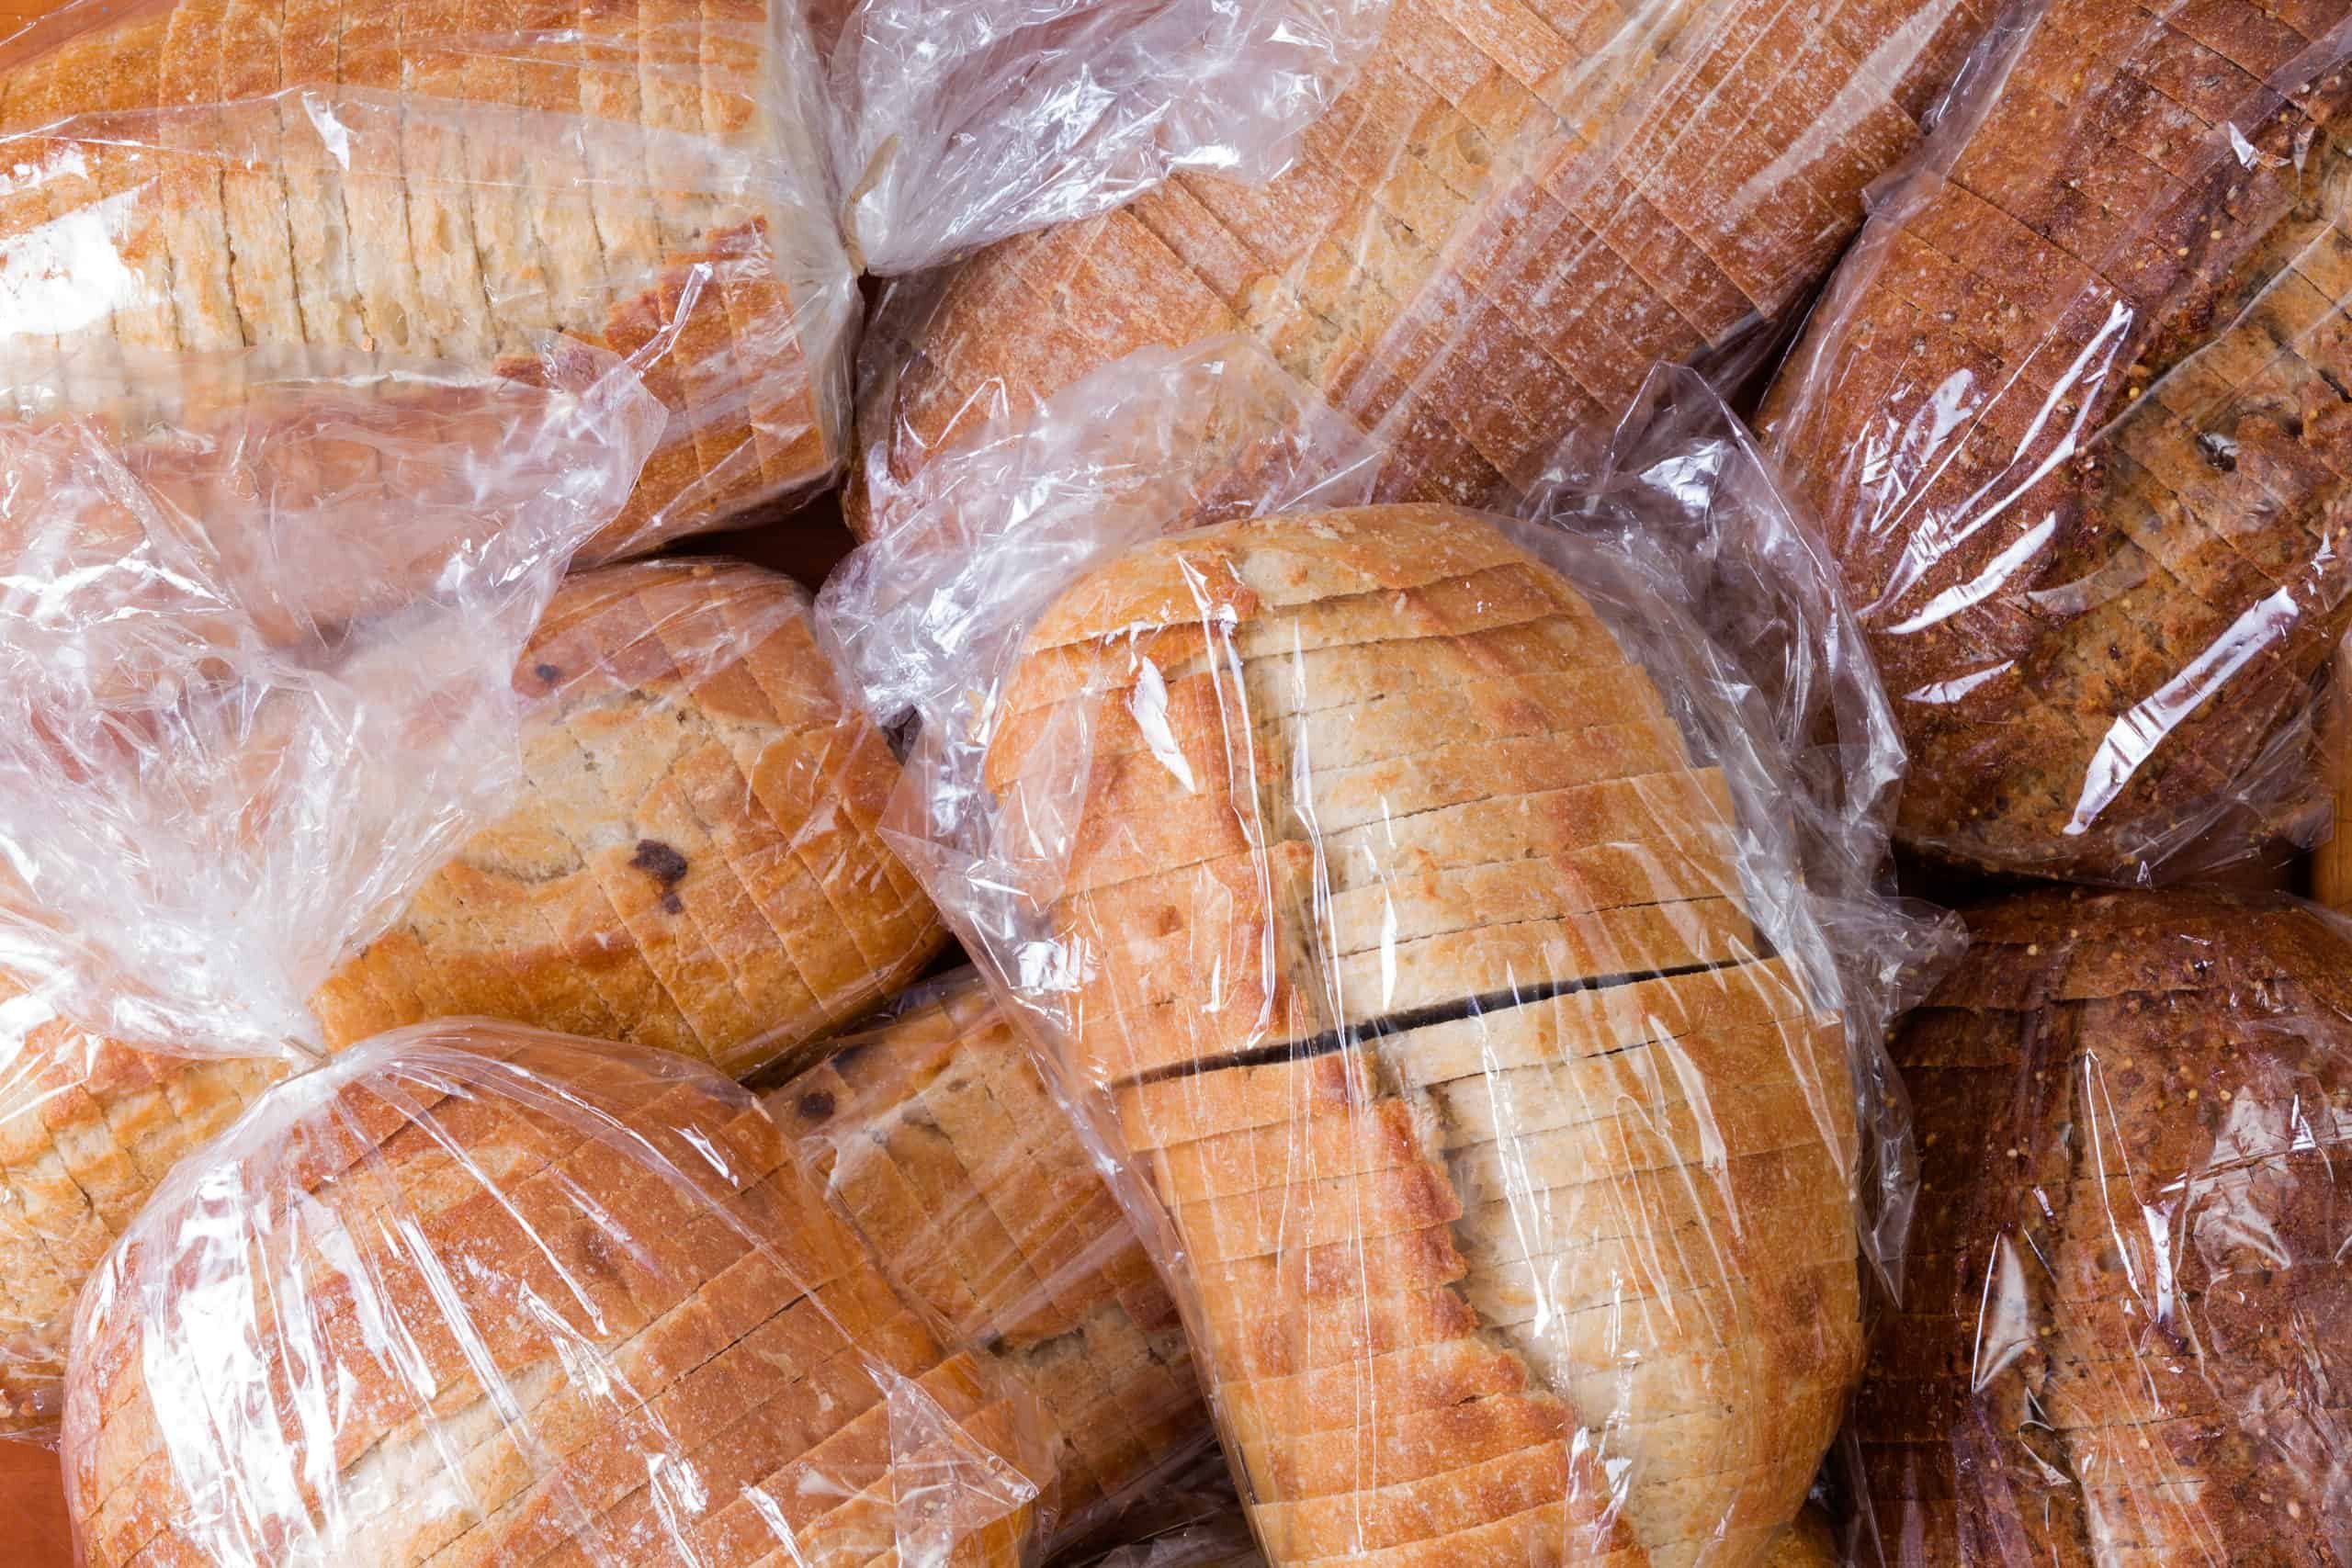 sliced bread in bag